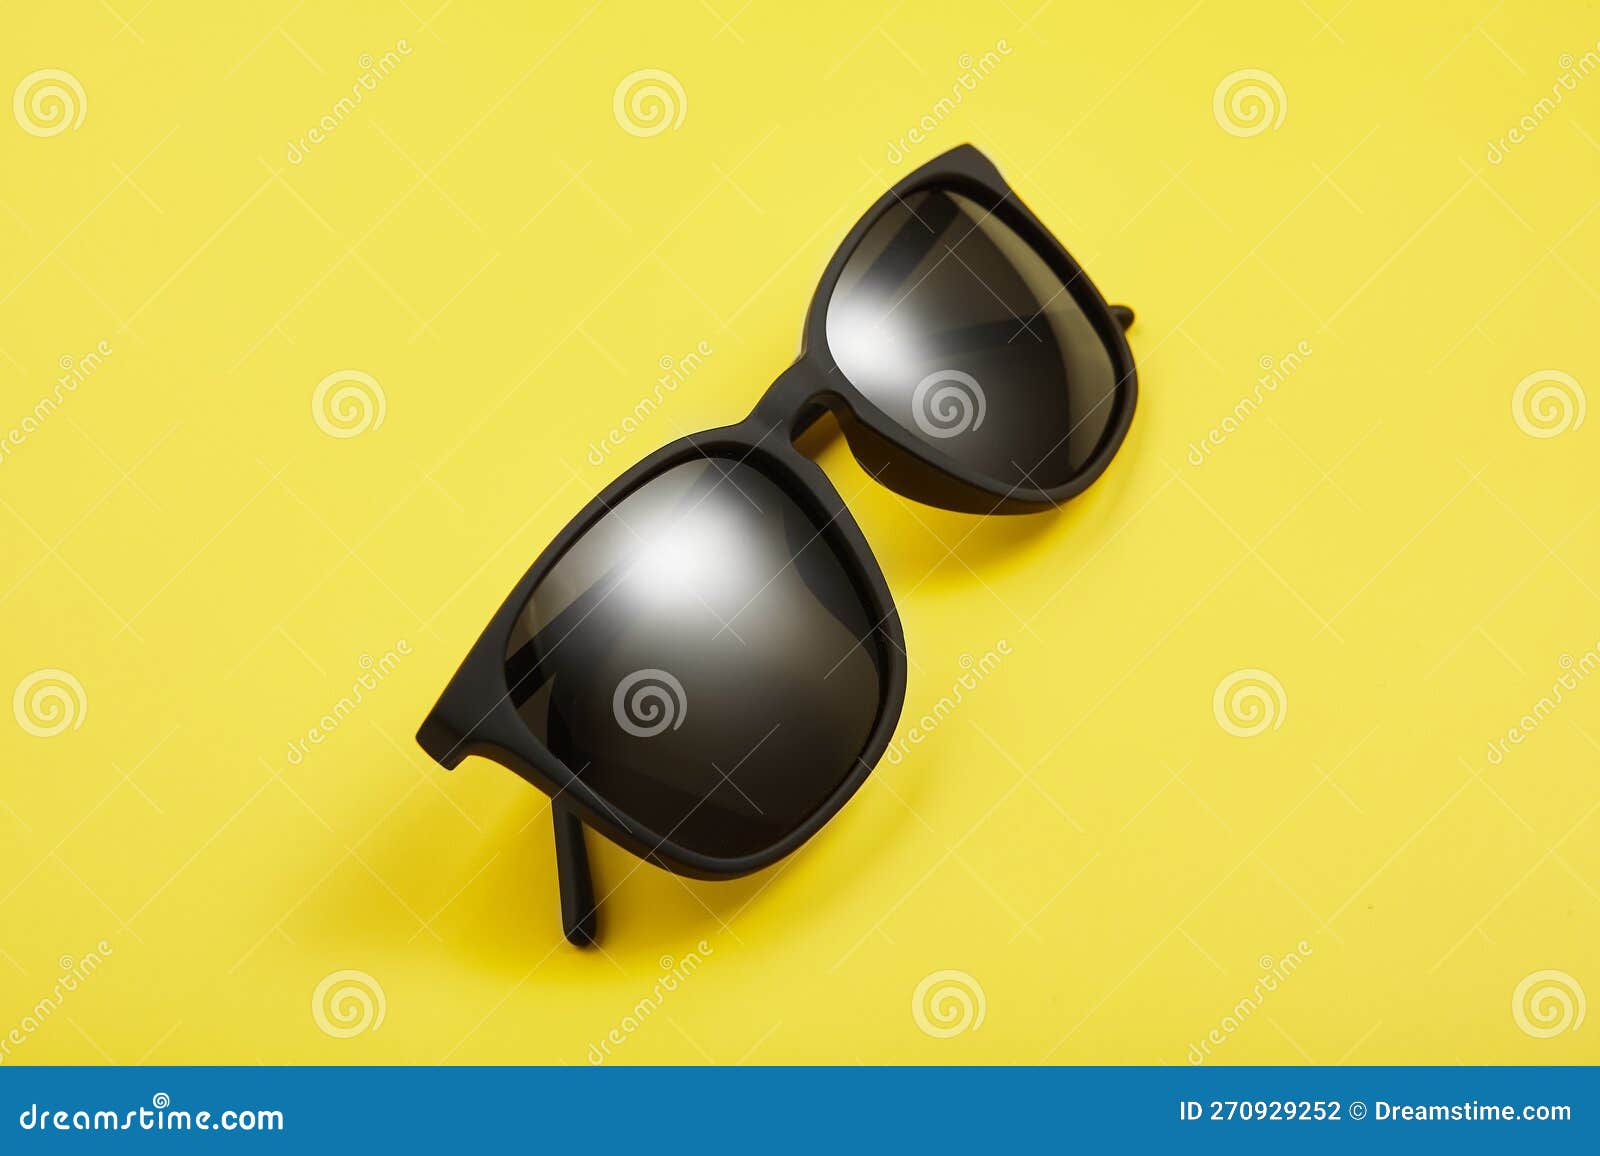 Eyewear - Opencart 4 Sunglasses Store Template by RajodiyaInfotech